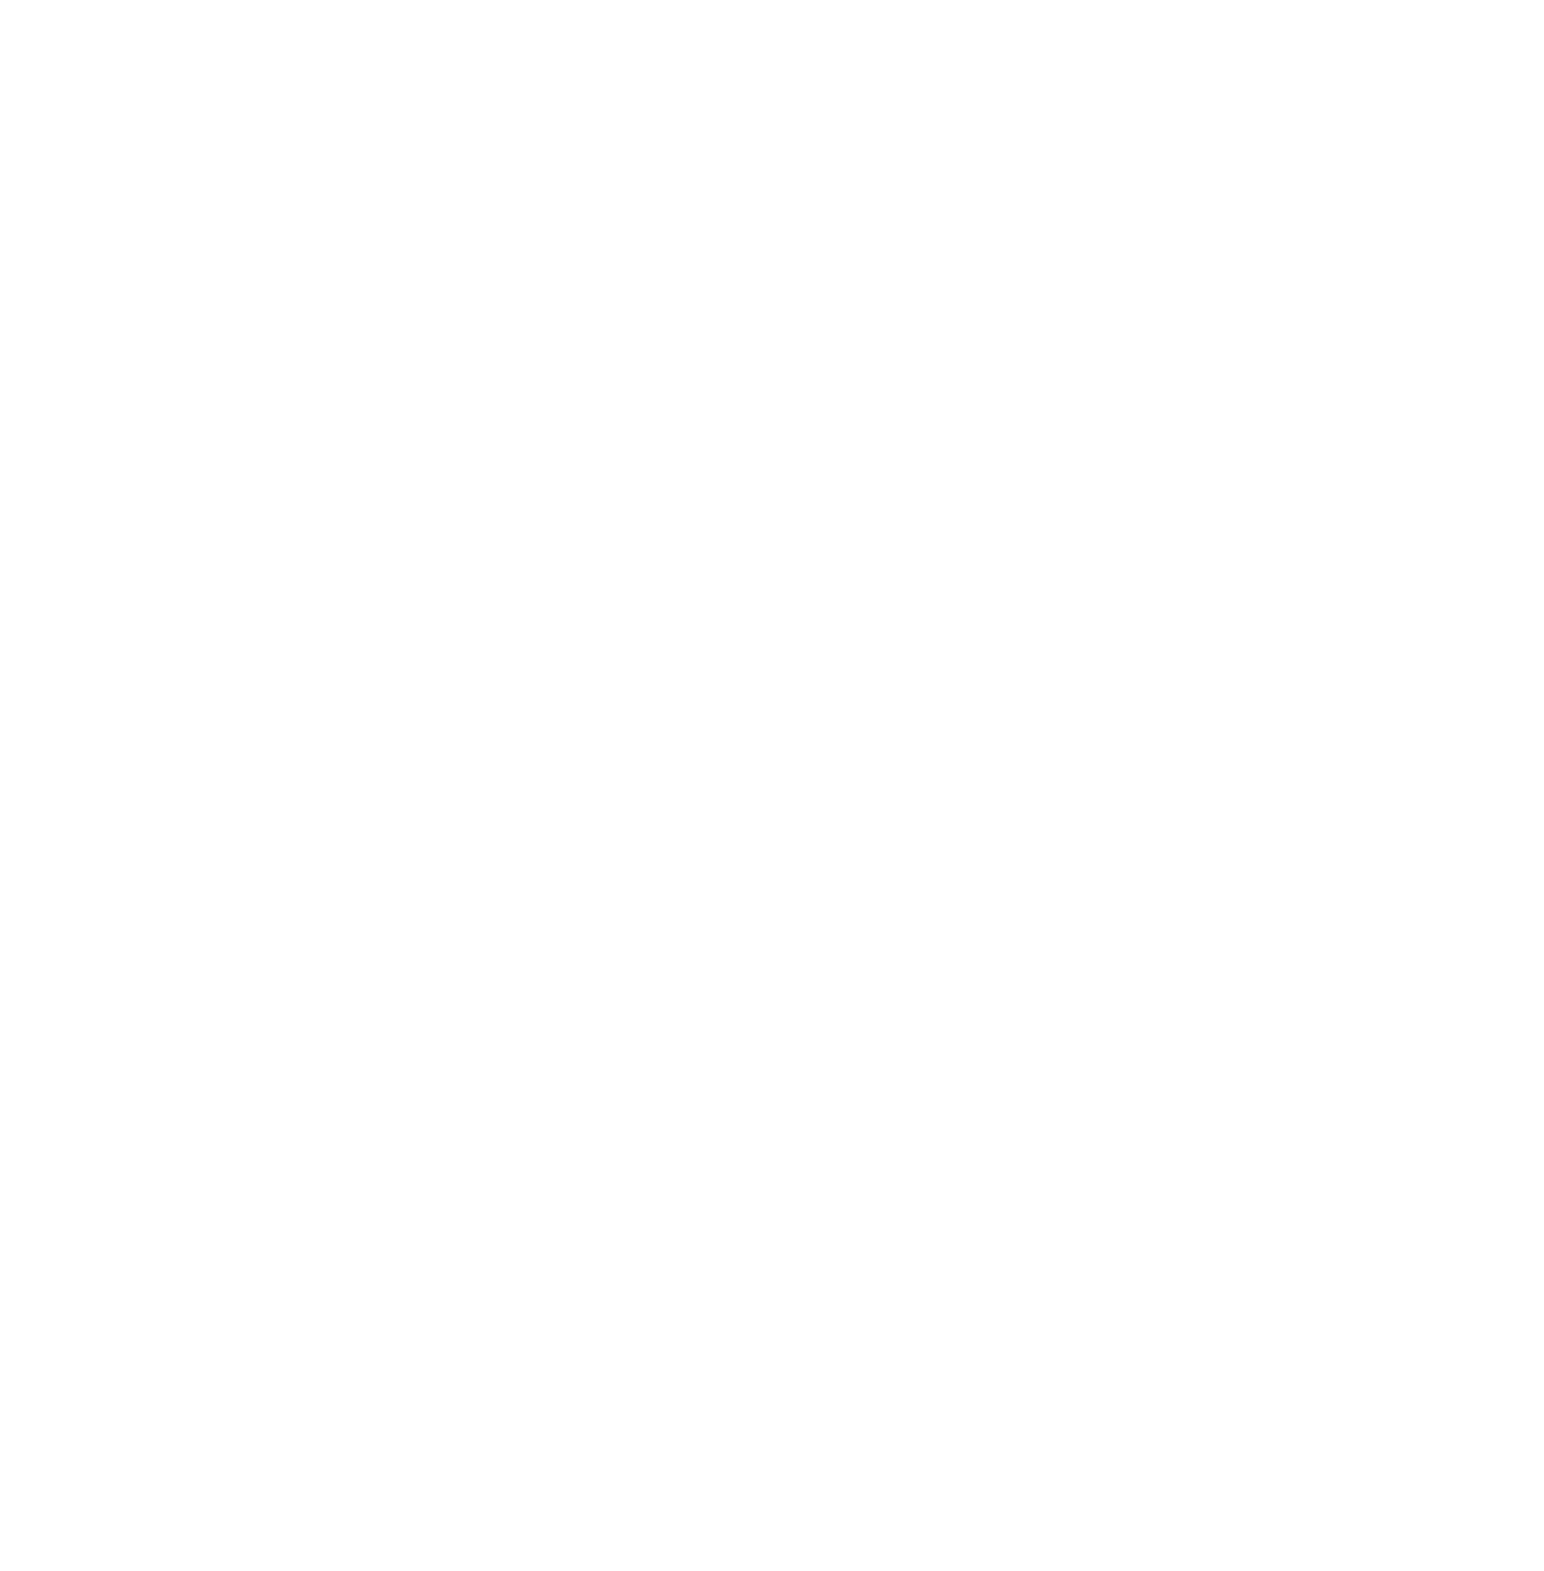 Essity logo for dark backgrounds (transparent PNG)